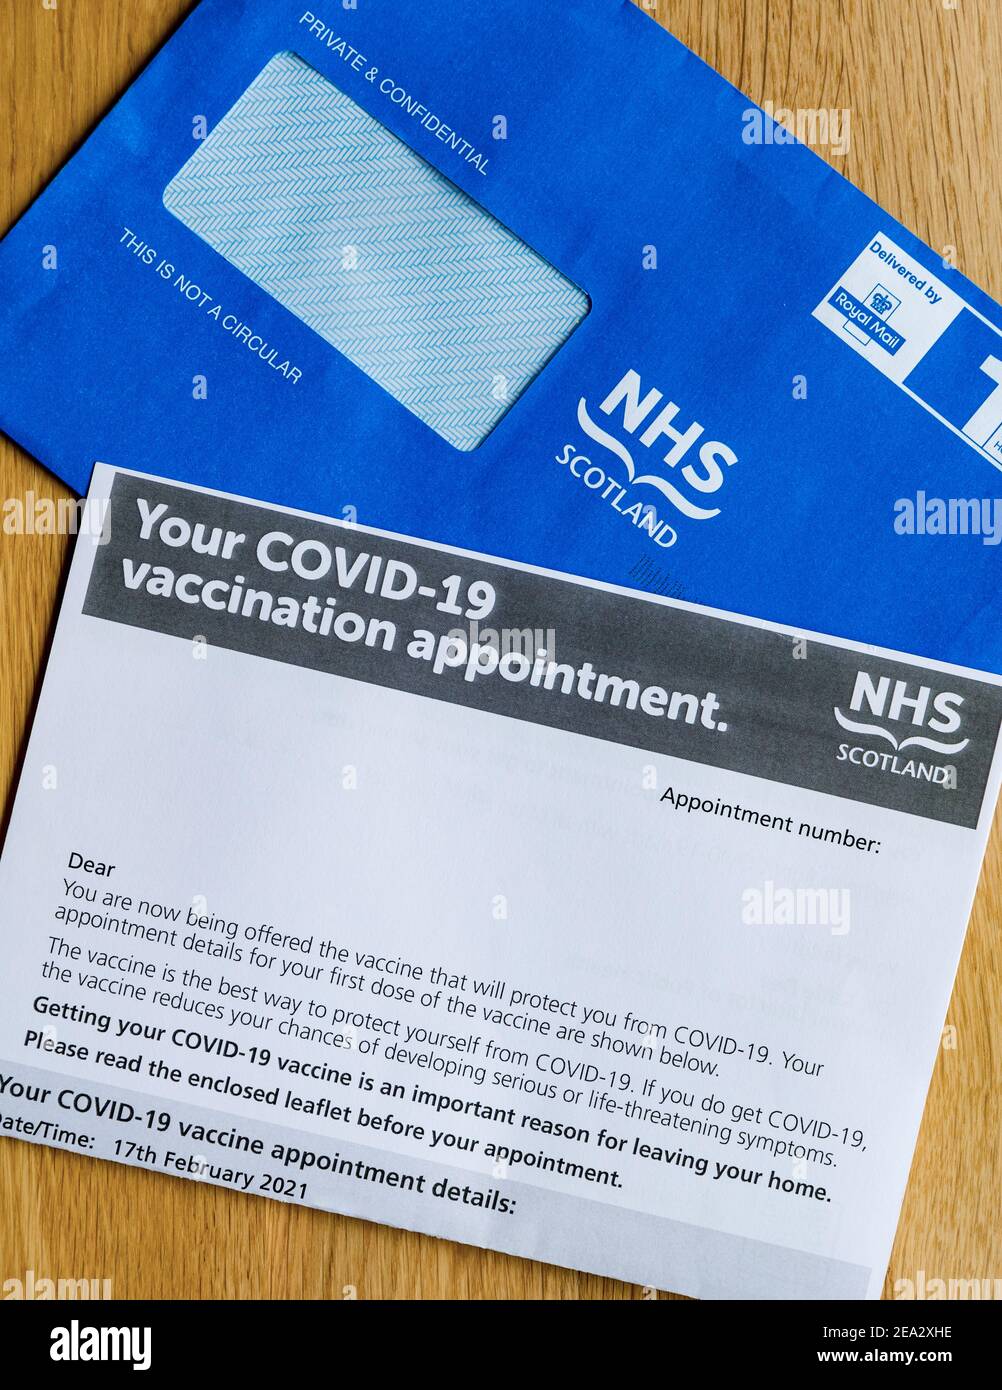 Enveloppe bleue de la NHS Scotland et lettre de désignation du vaccin pendant la pandémie du coronavirus Covid-19, au Royaume-Uni Banque D'Images